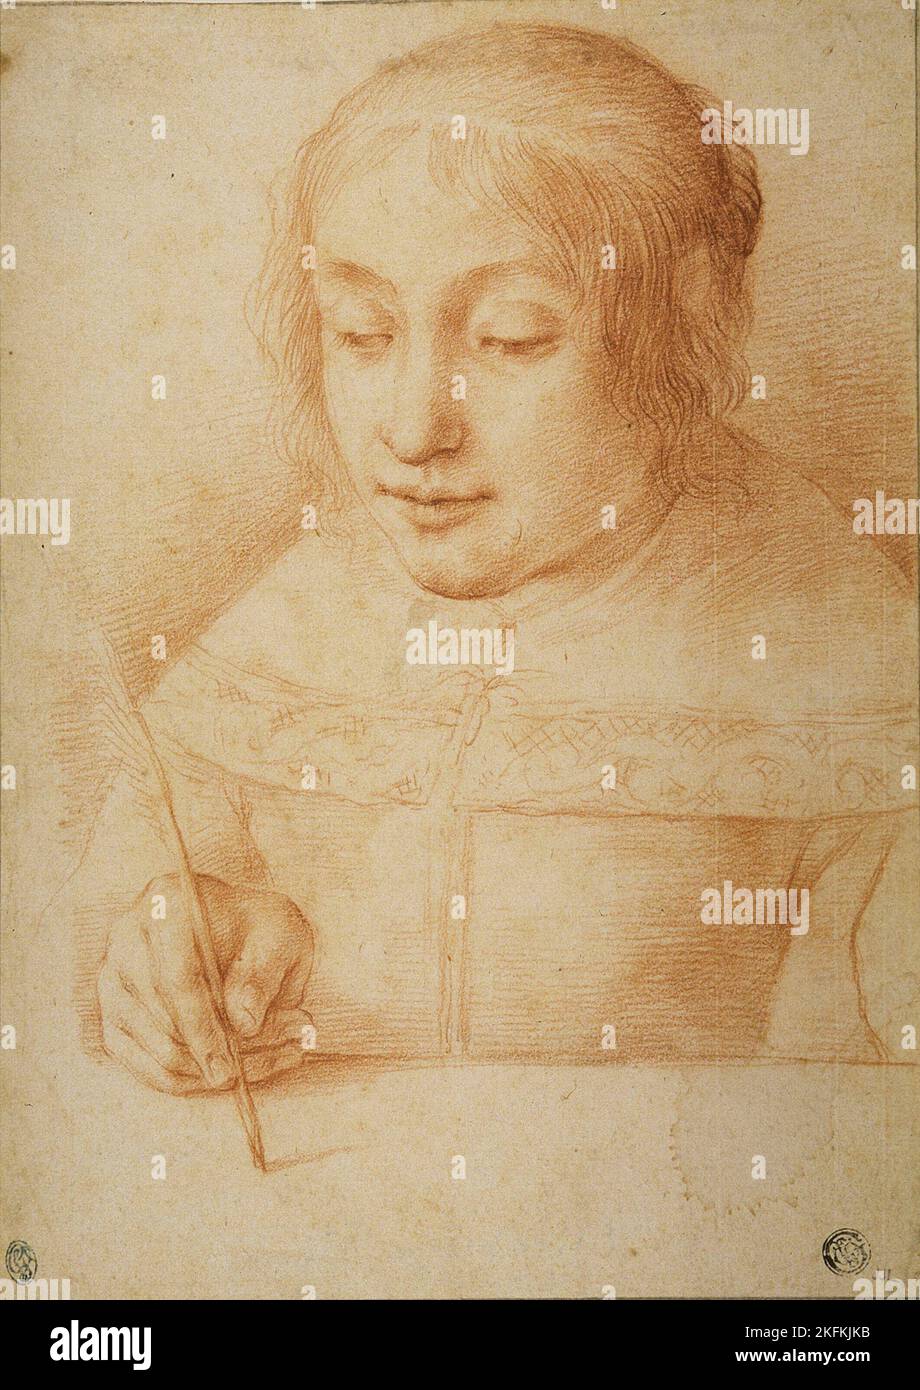 Giovane donna che scrive o che disegnano, n.d. Attribuito a Elisabetta Sirani. Foto Stock